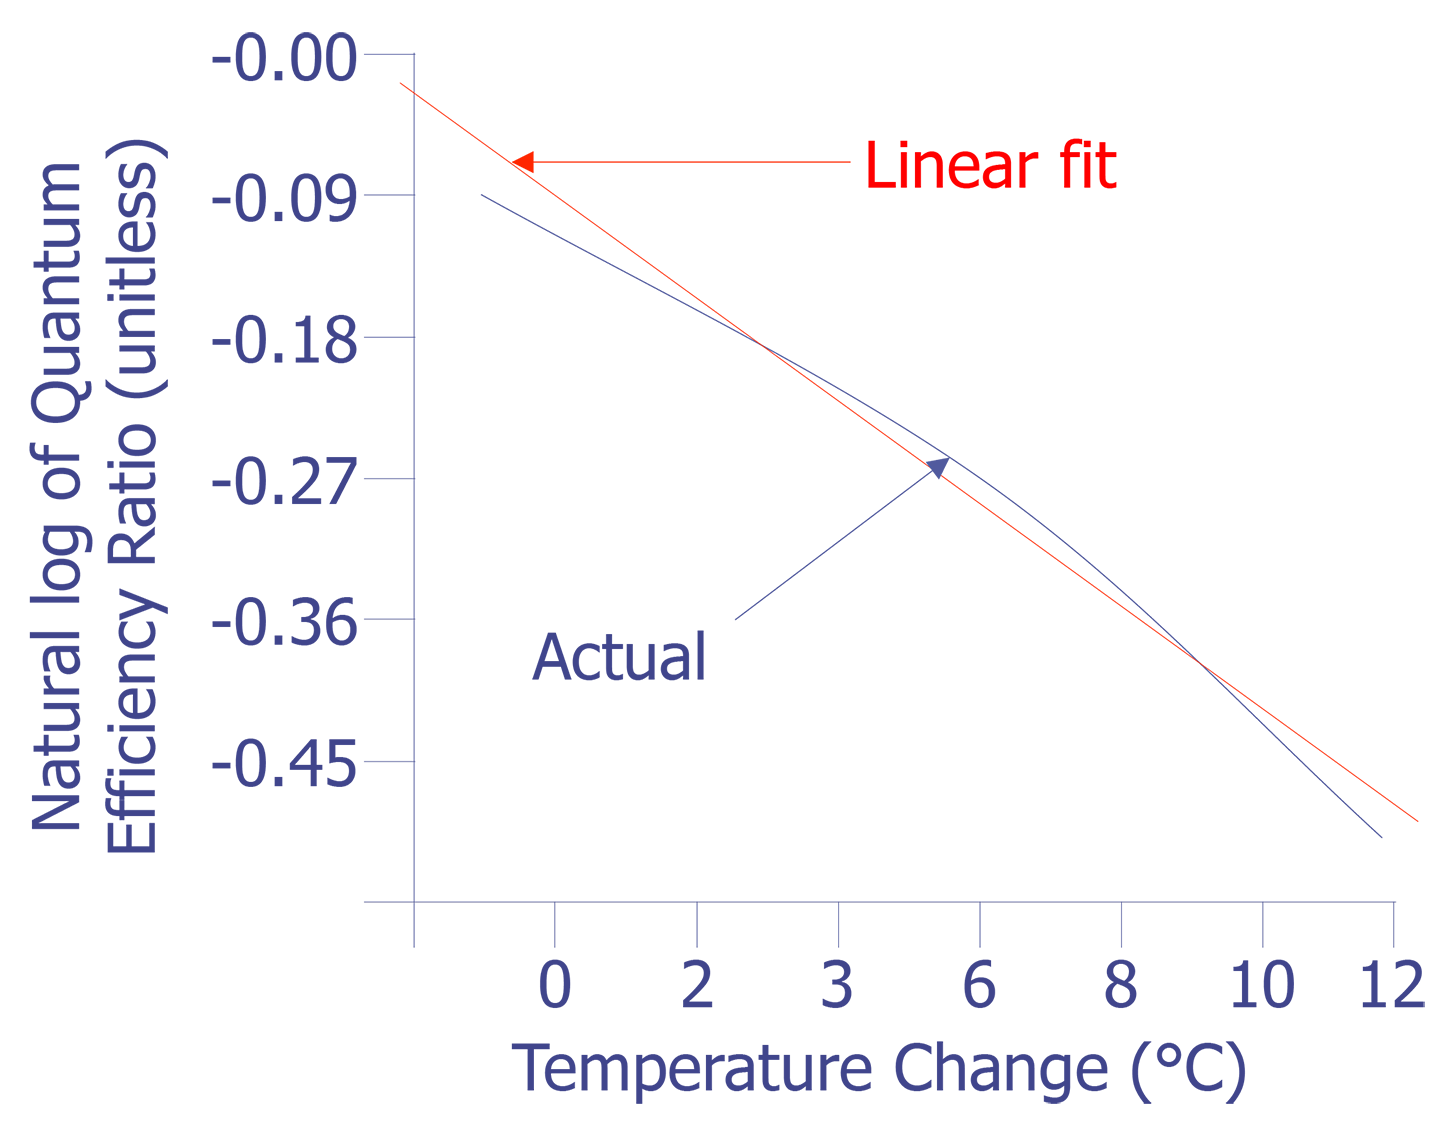 Plot of quantum efficiency ratio around room temperature.